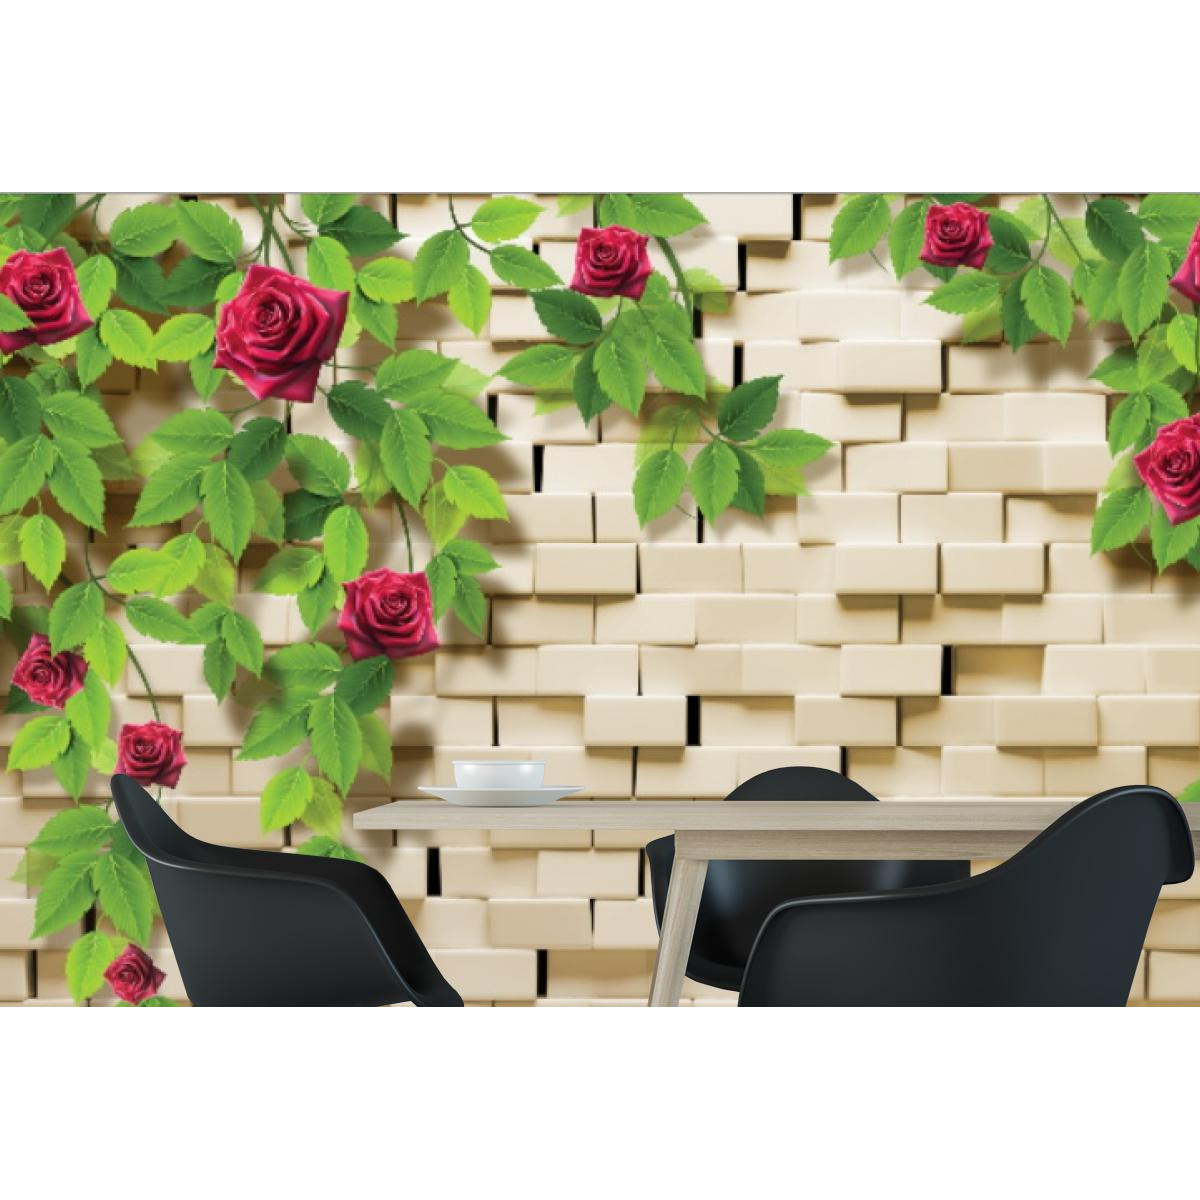 Фотообои 3Д вьющиеся розы на кирпичной стене